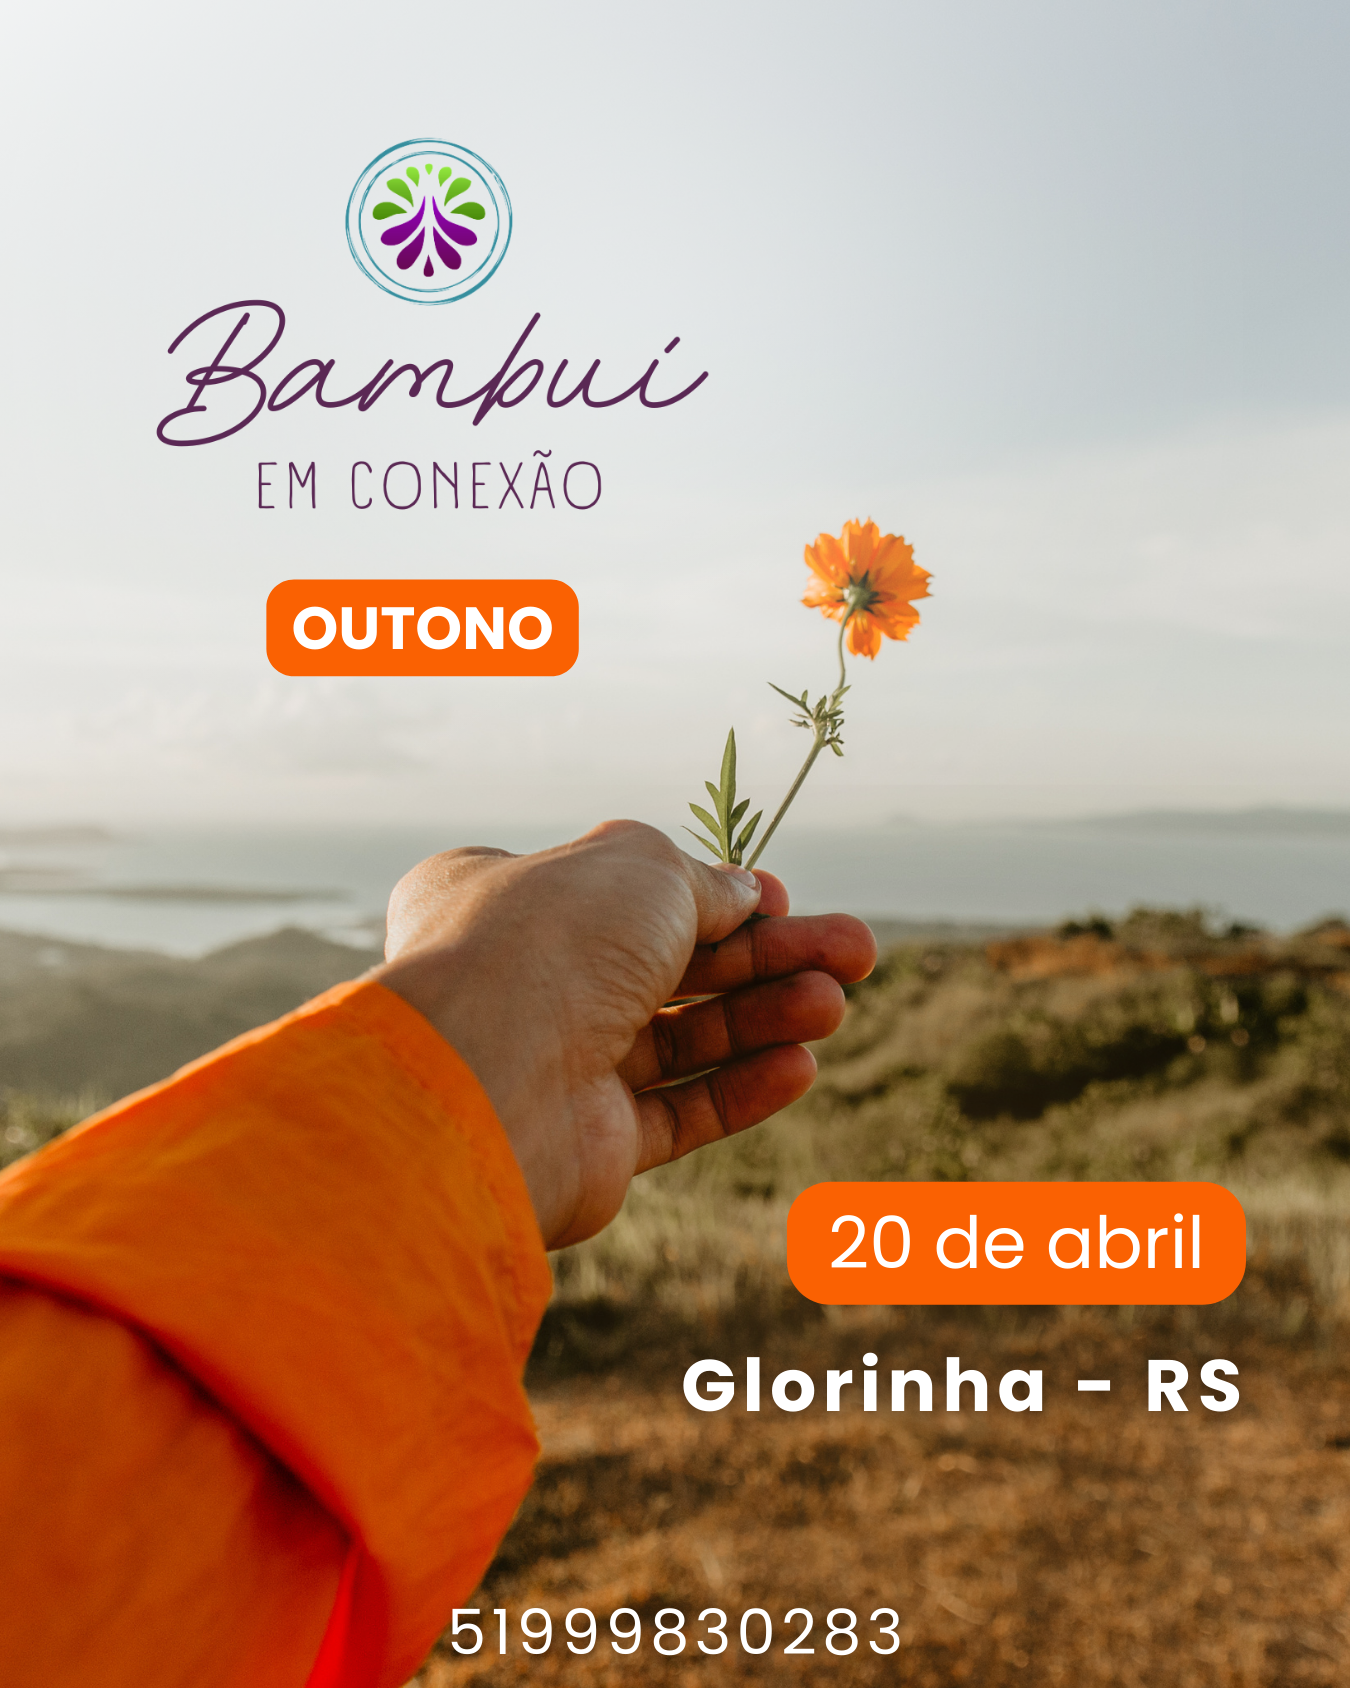 Bambuí em Conexão - Outono - Glorinha/RS - 20 de abril 7